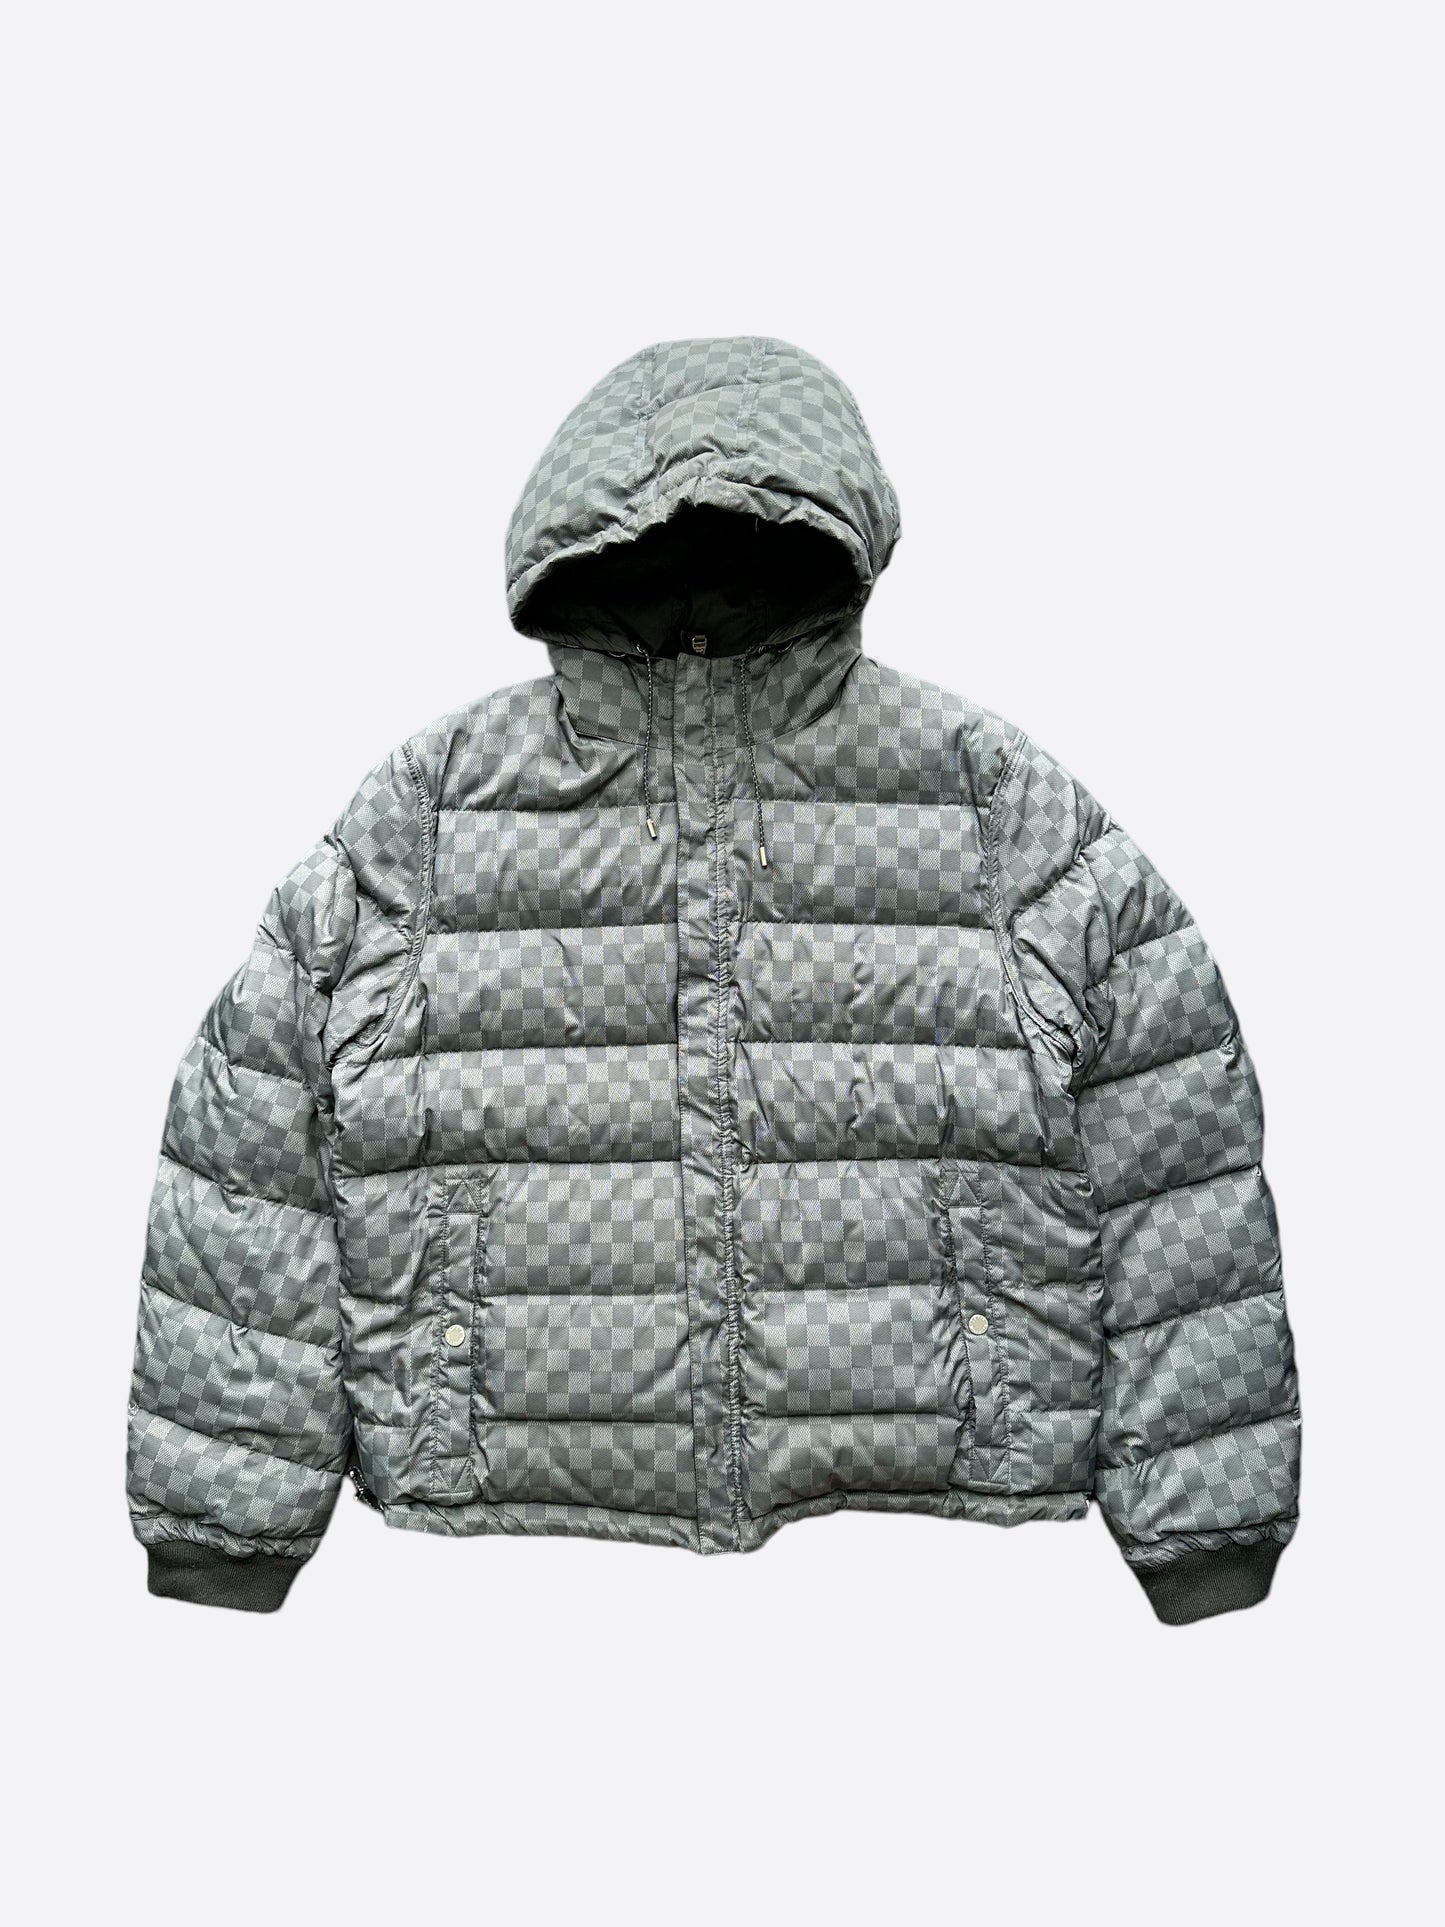 vuitton grey puffer jacket